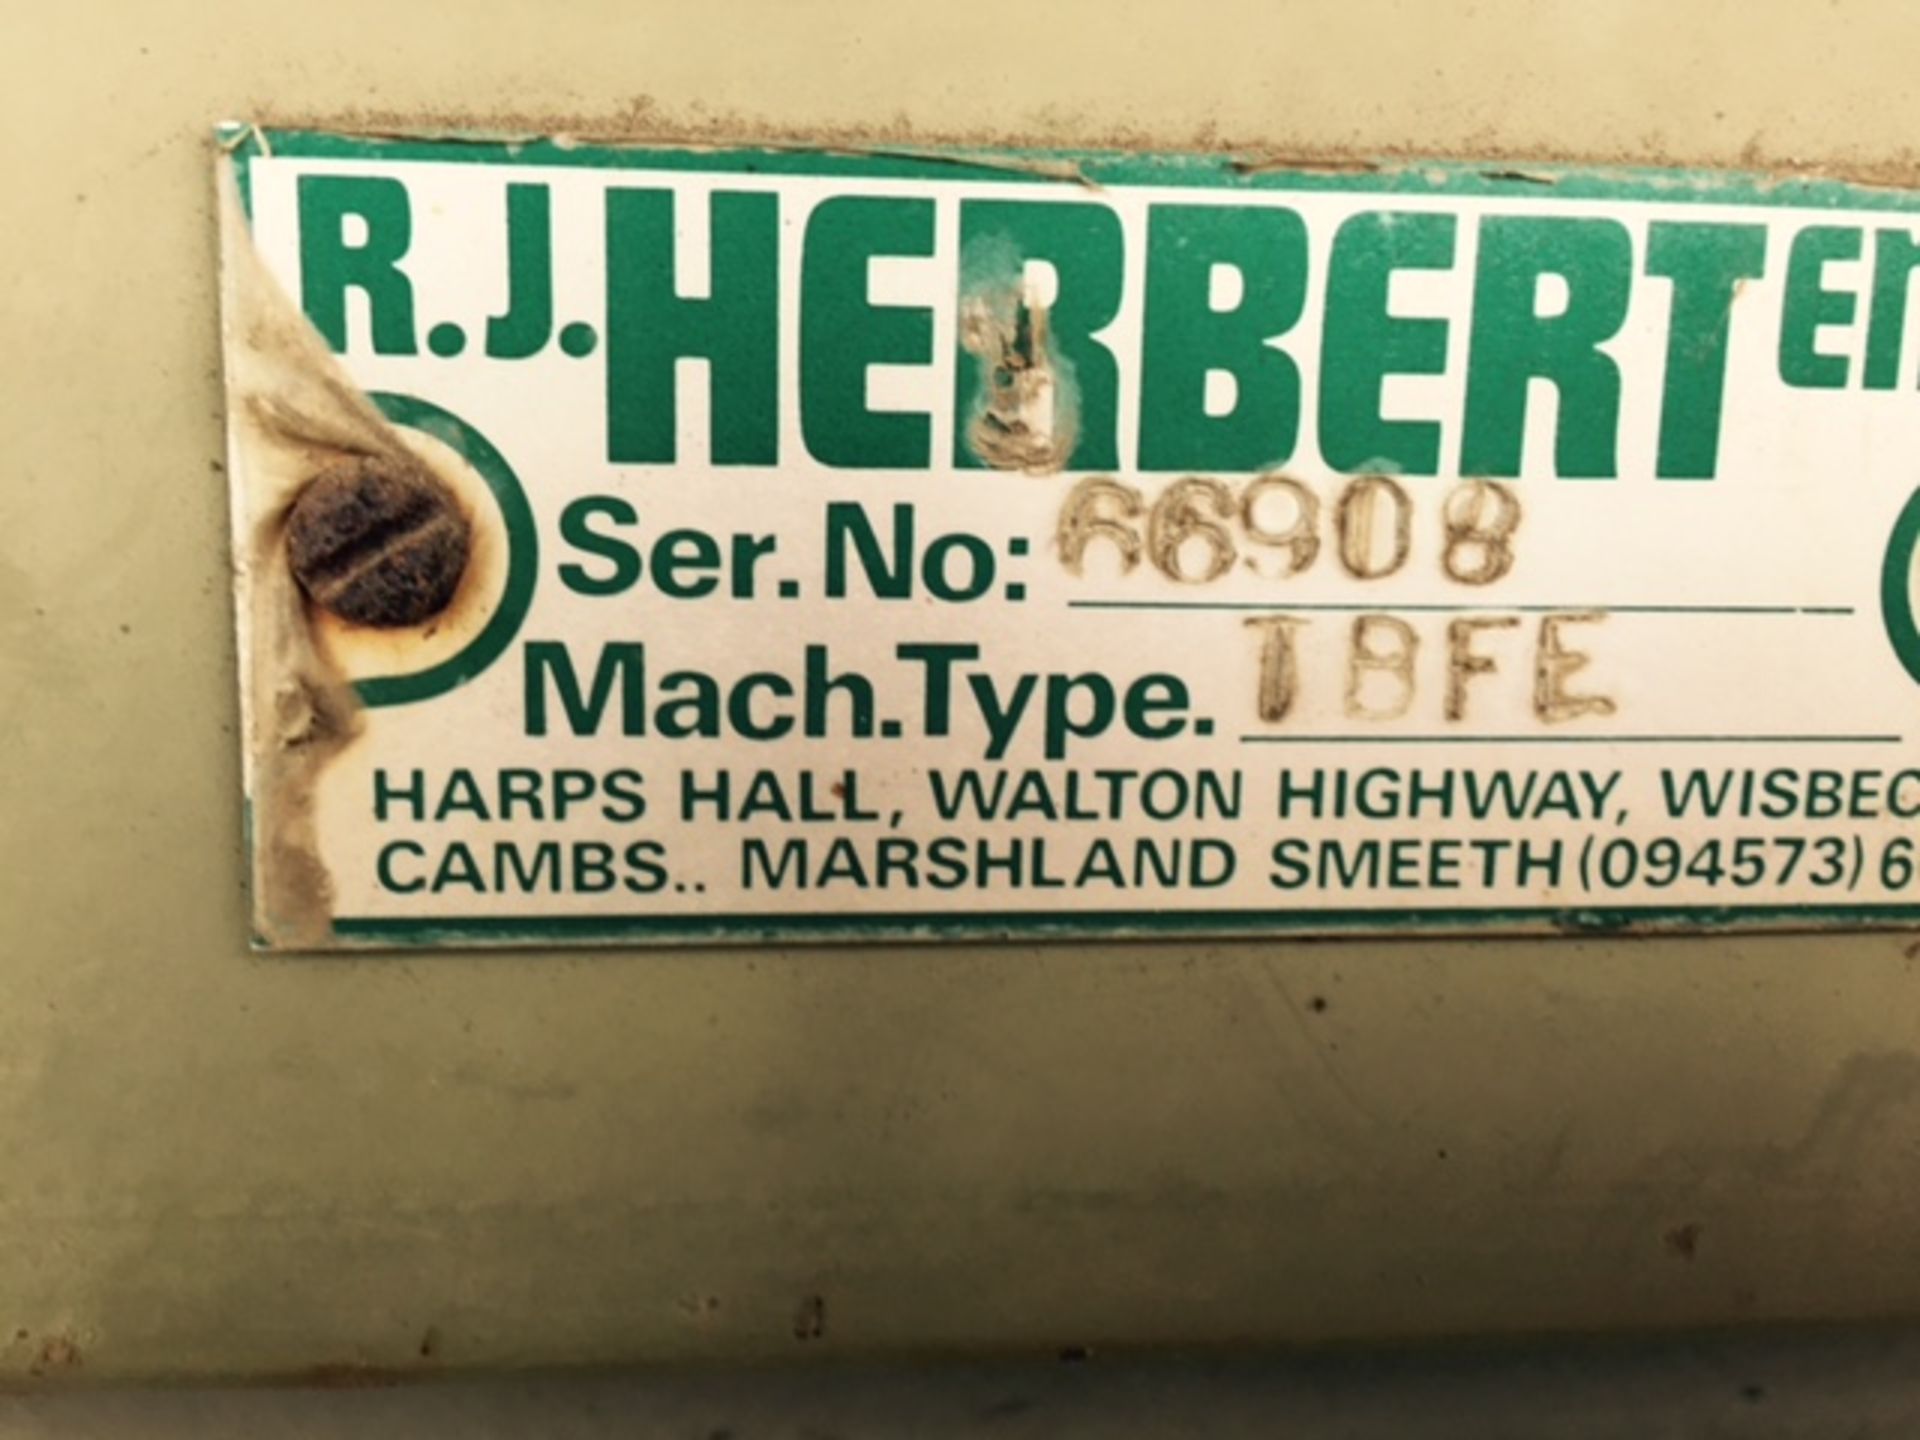 Herbert Box Filler Serial Number 66908 Location: Thorney Peterborough - Image 2 of 2